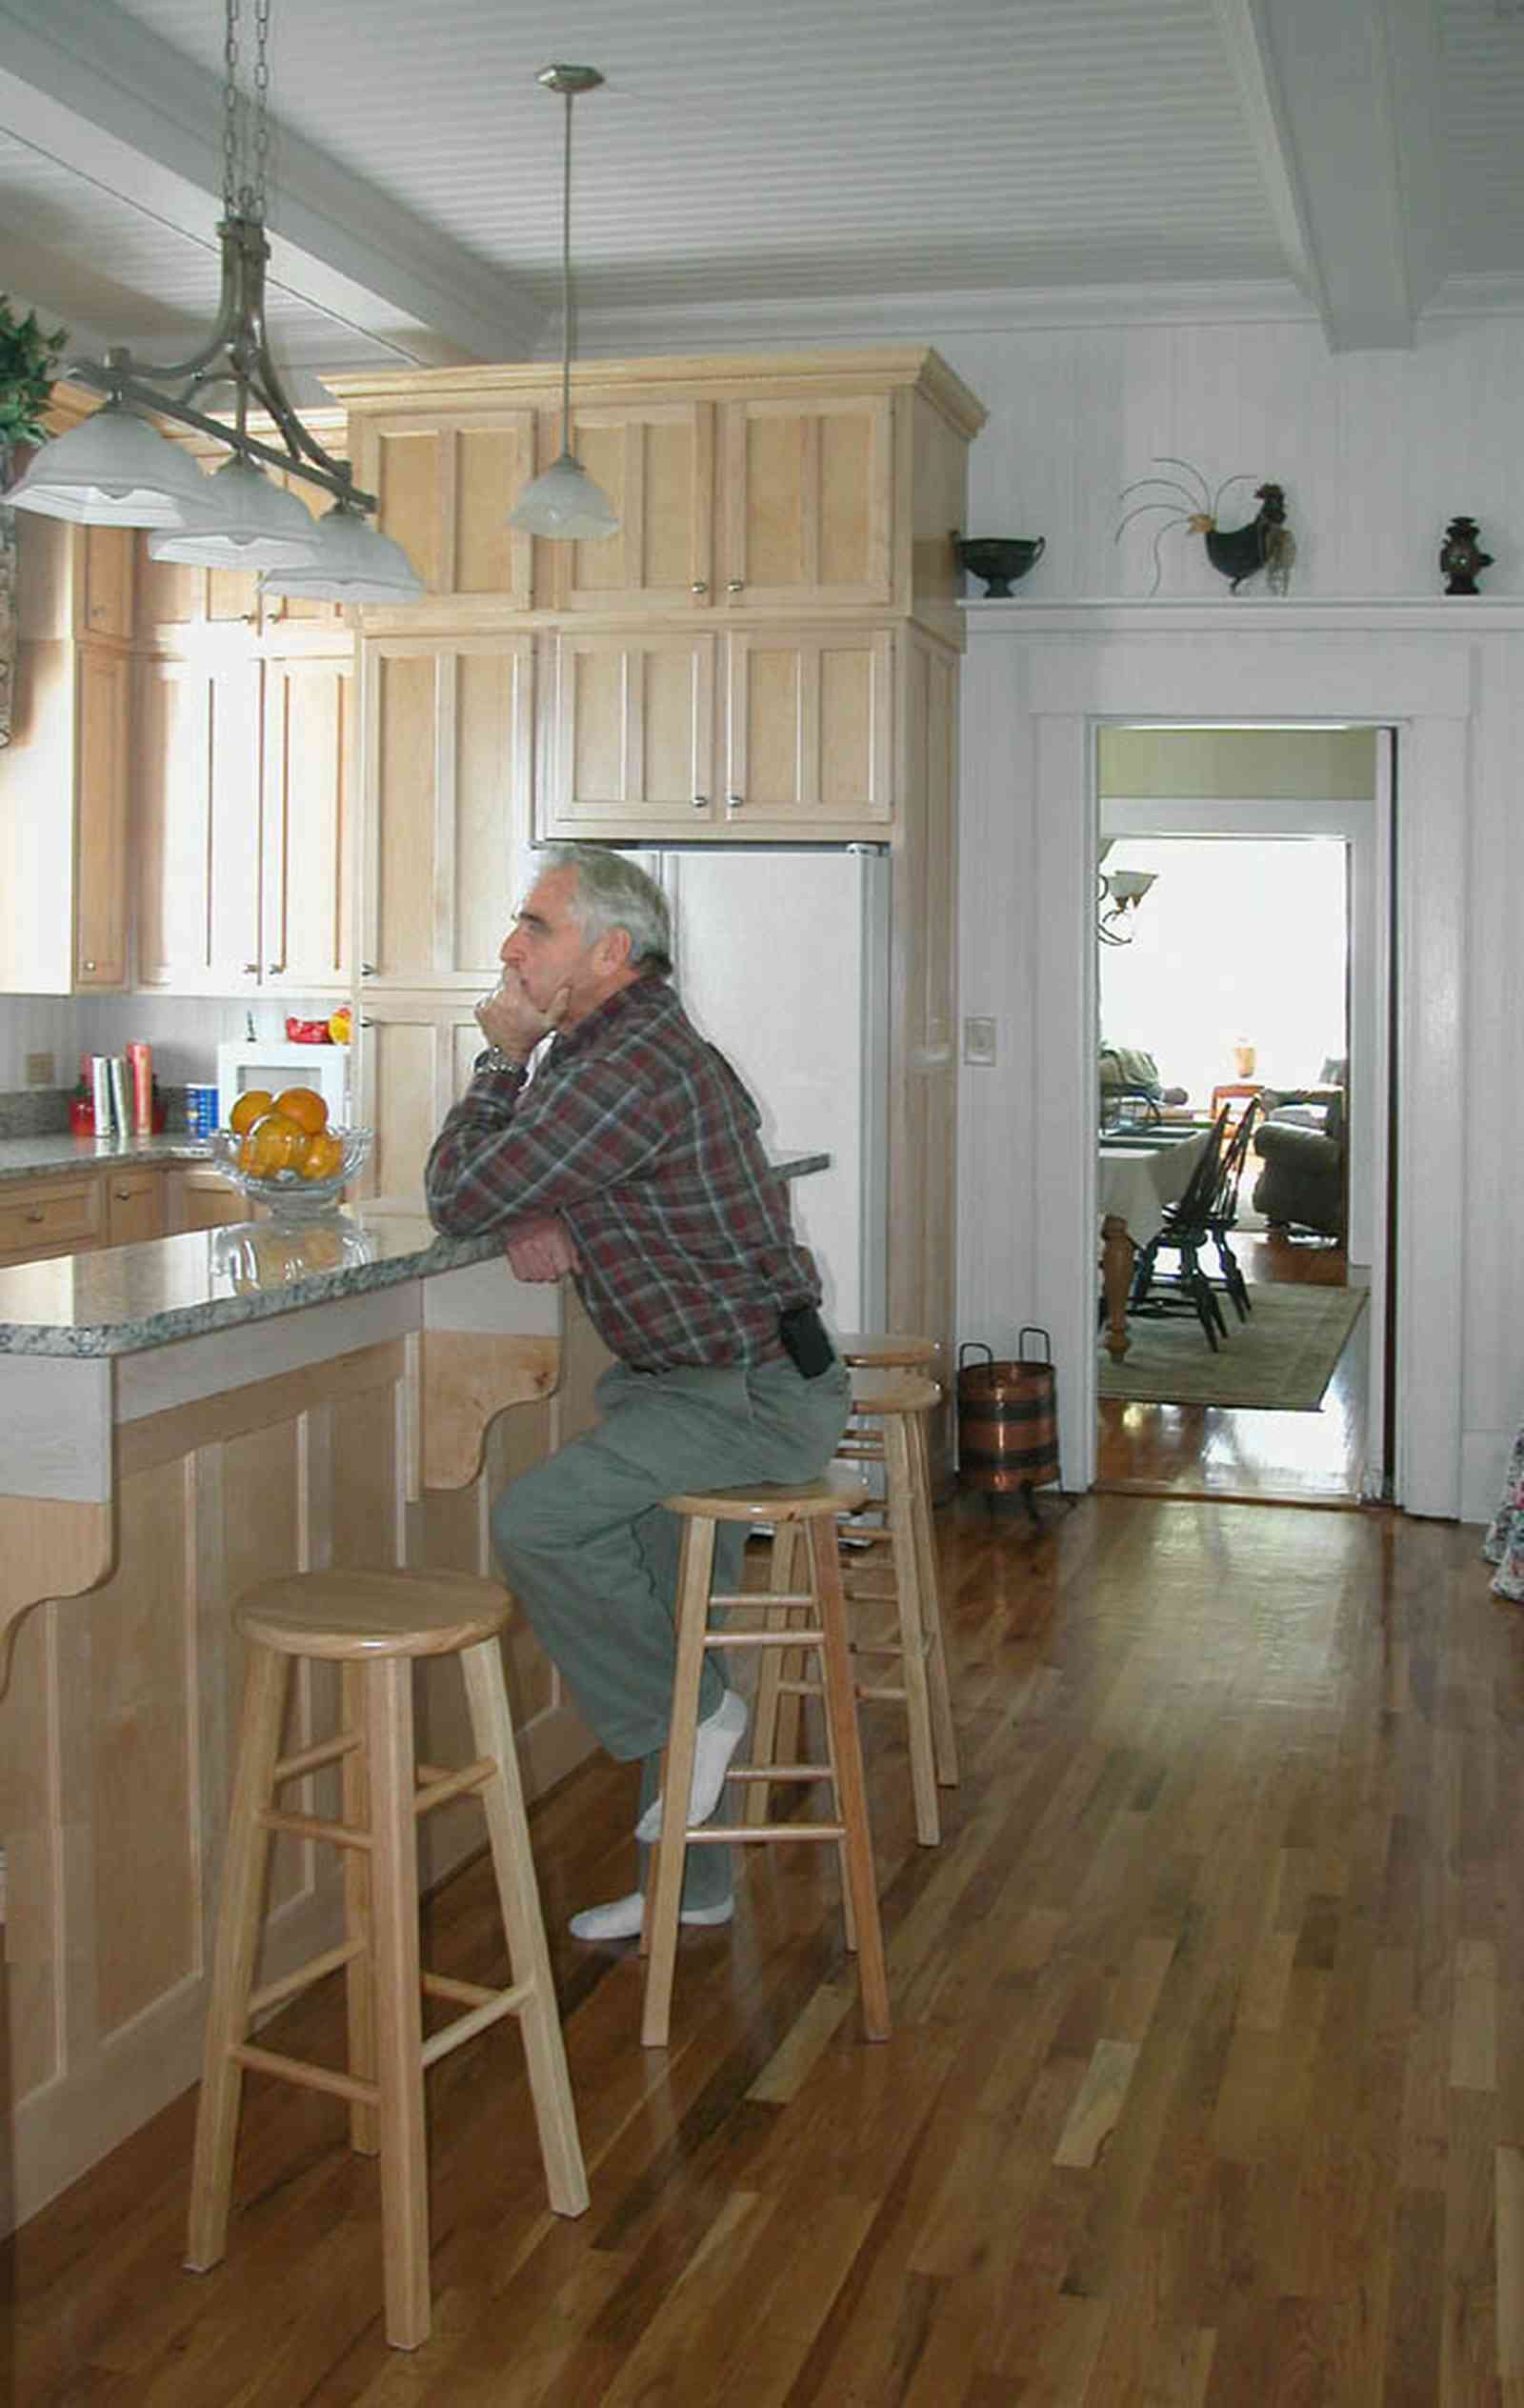 Century:-Tannenheim_01g.jpg:  kitchen counter, kitchen stools, granite counter tops, refrigerator, wooden floor, 